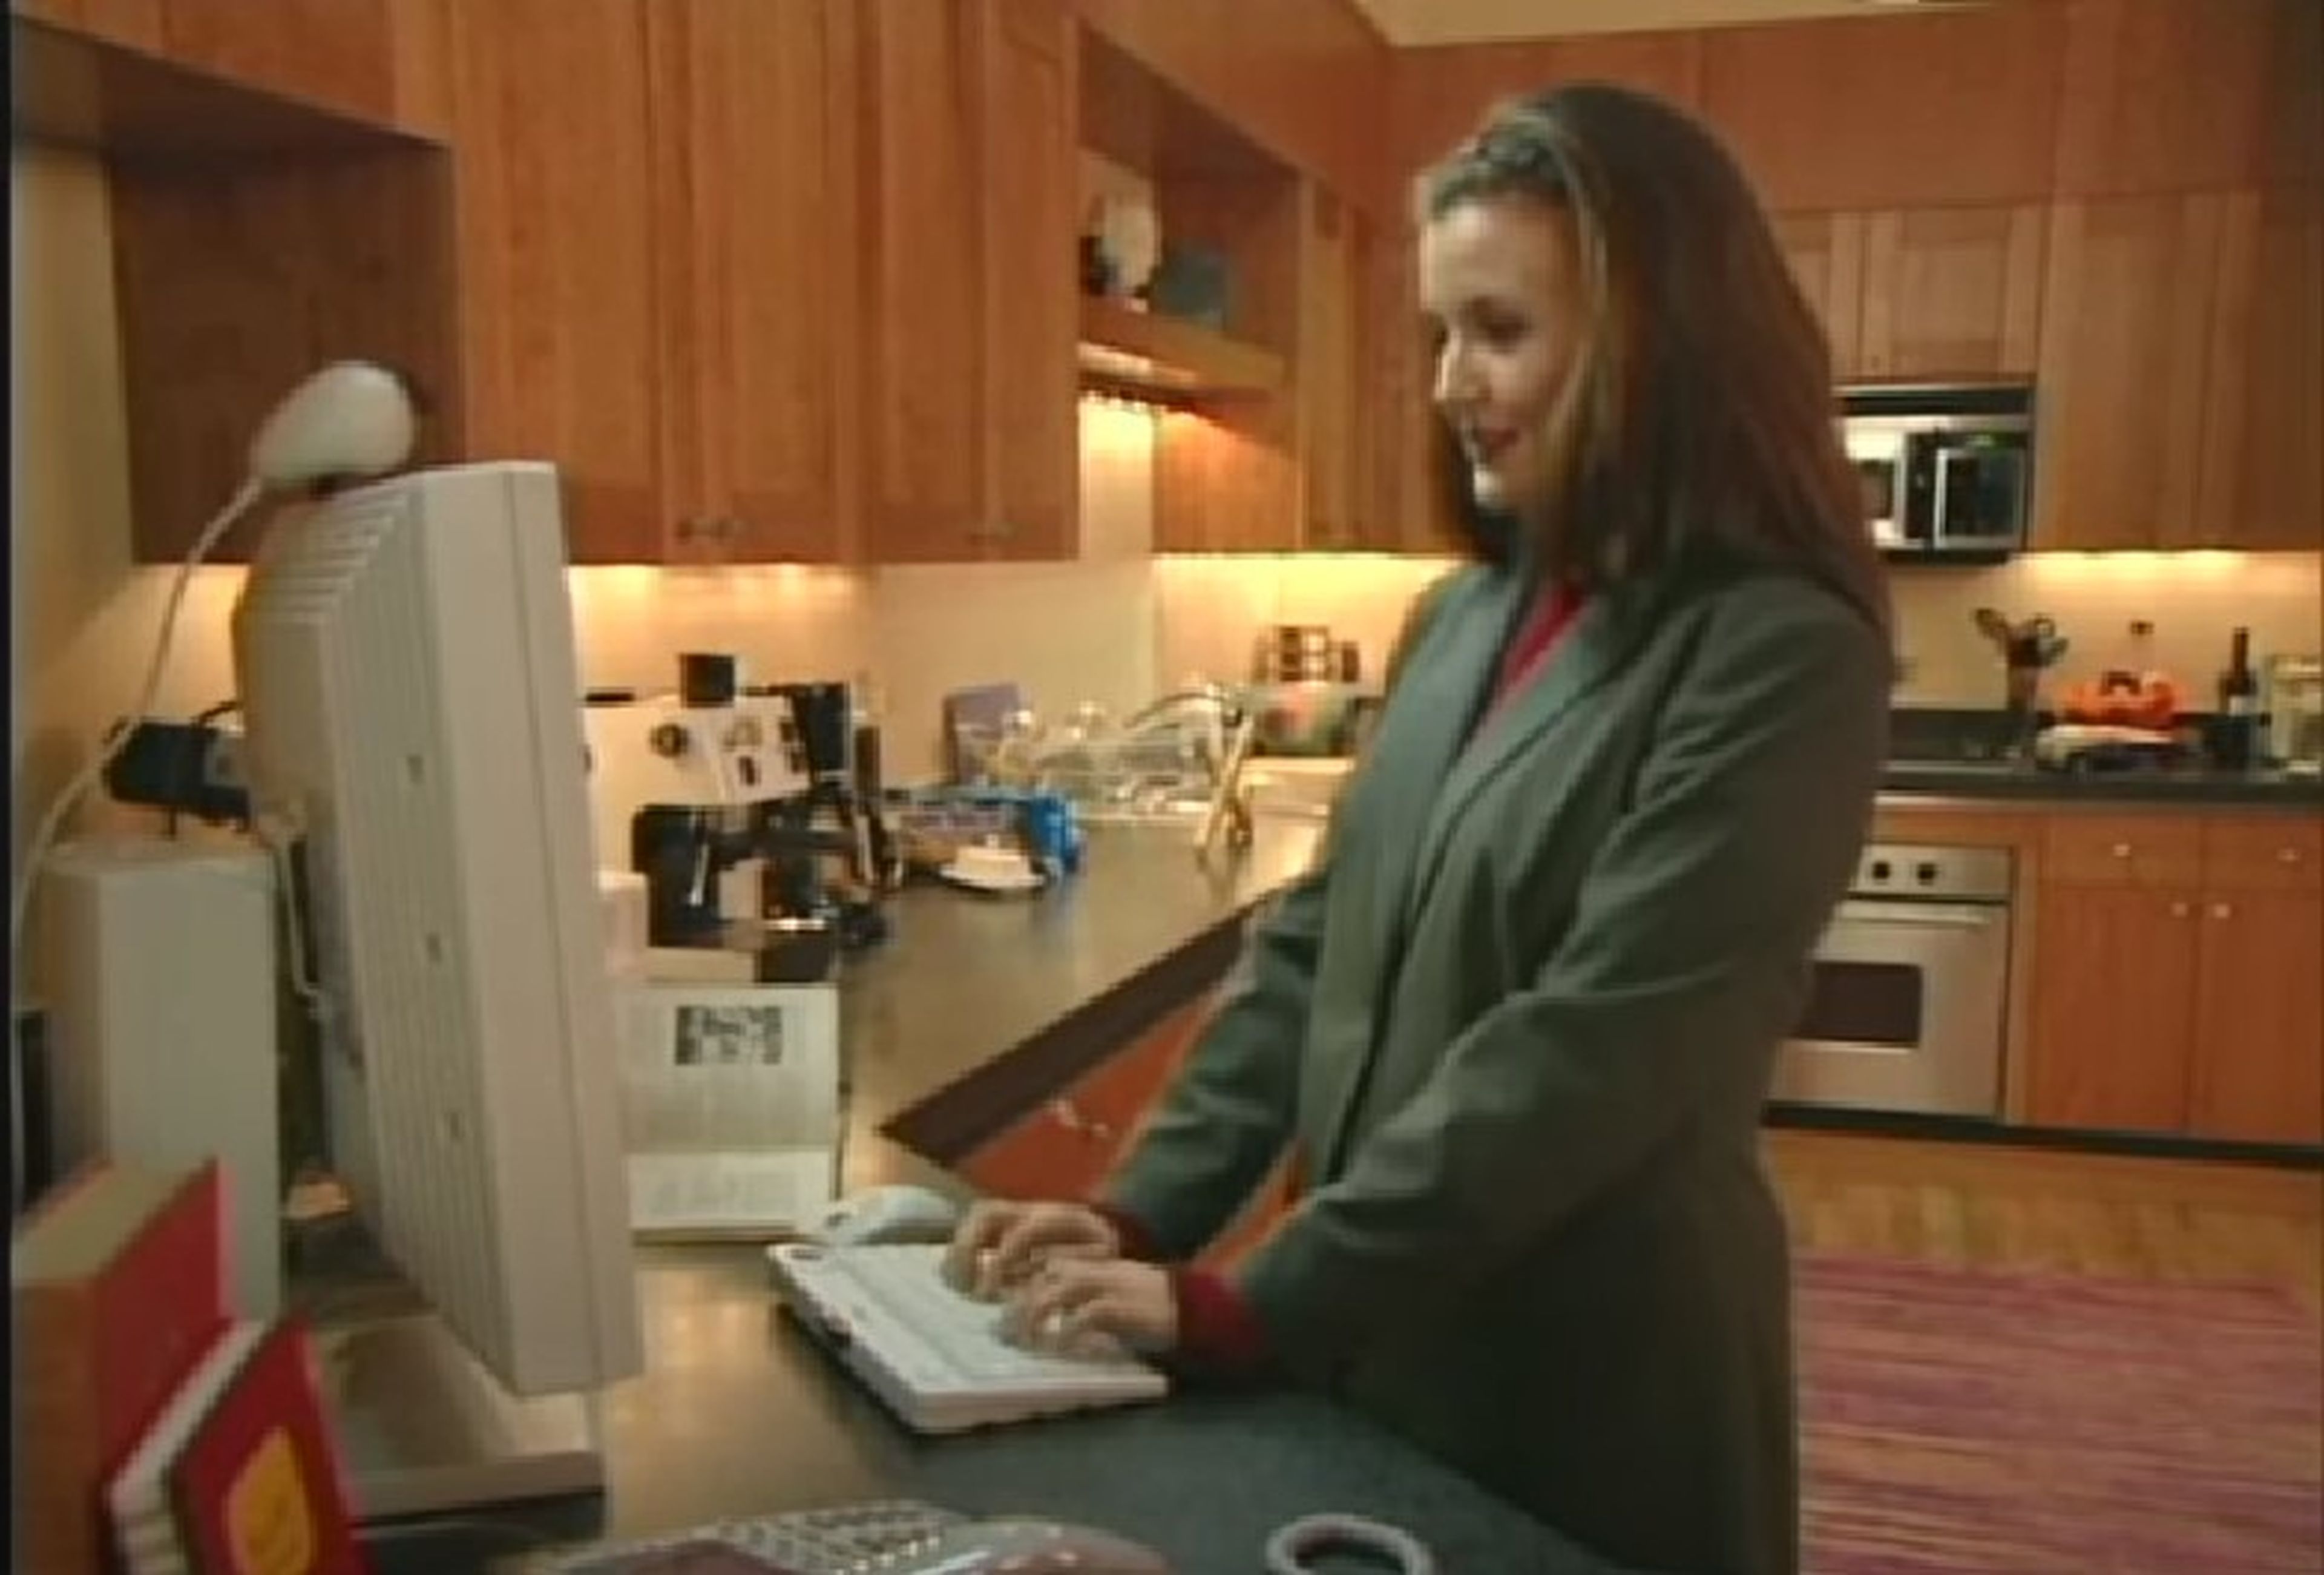 Imagen del vídeo explicativo del futuro hogar inteligente de Microsoft.